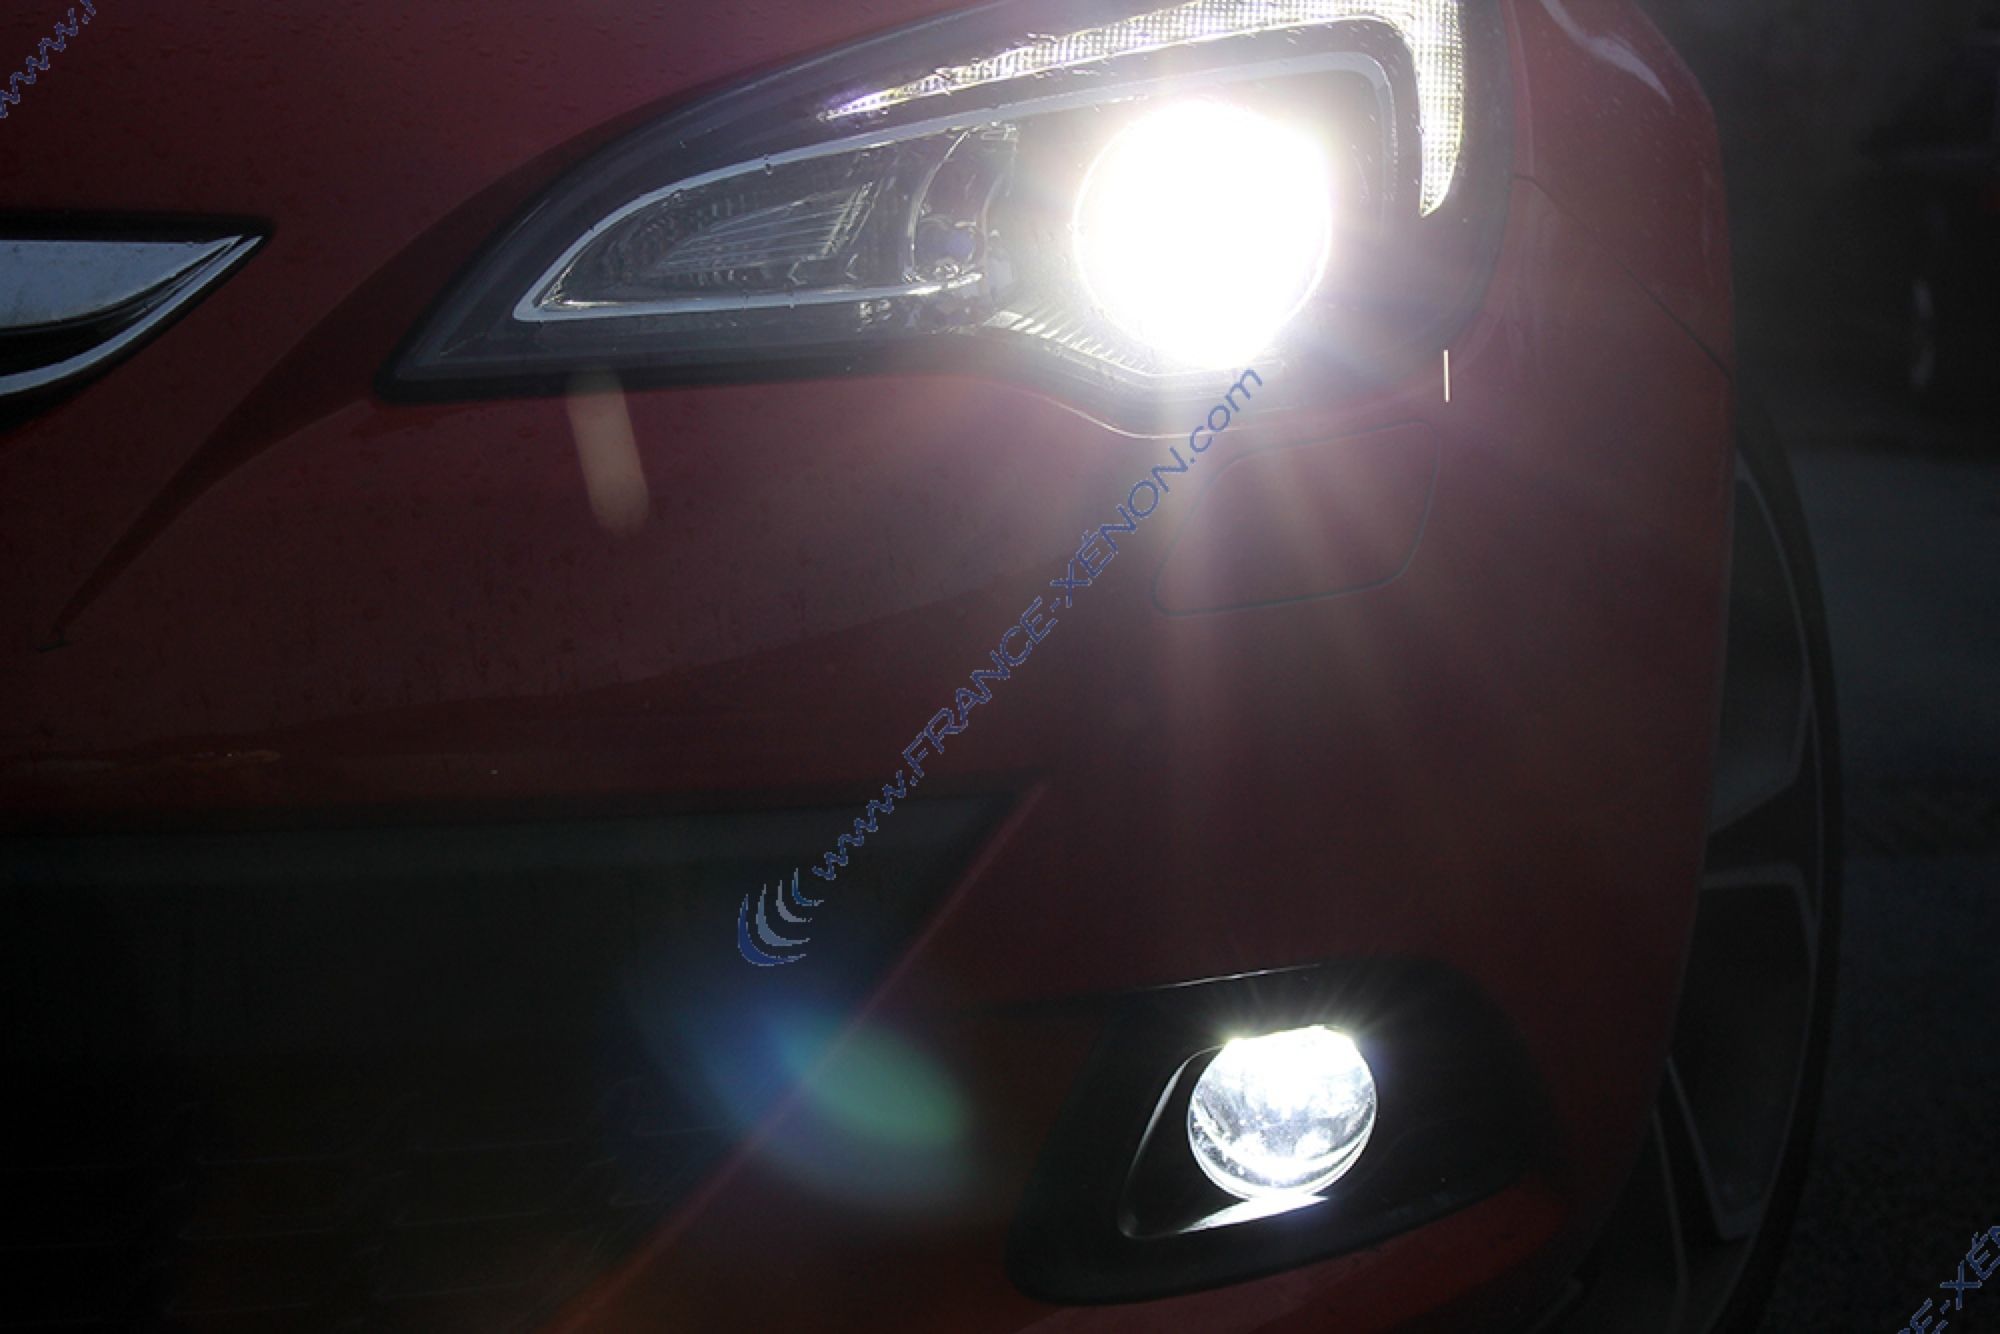 J lumineux LED BLANC XENON PLAQUE D'IMMATRICULATION mise à niveau Ampoule 1x Vauxhall Astra Mk6